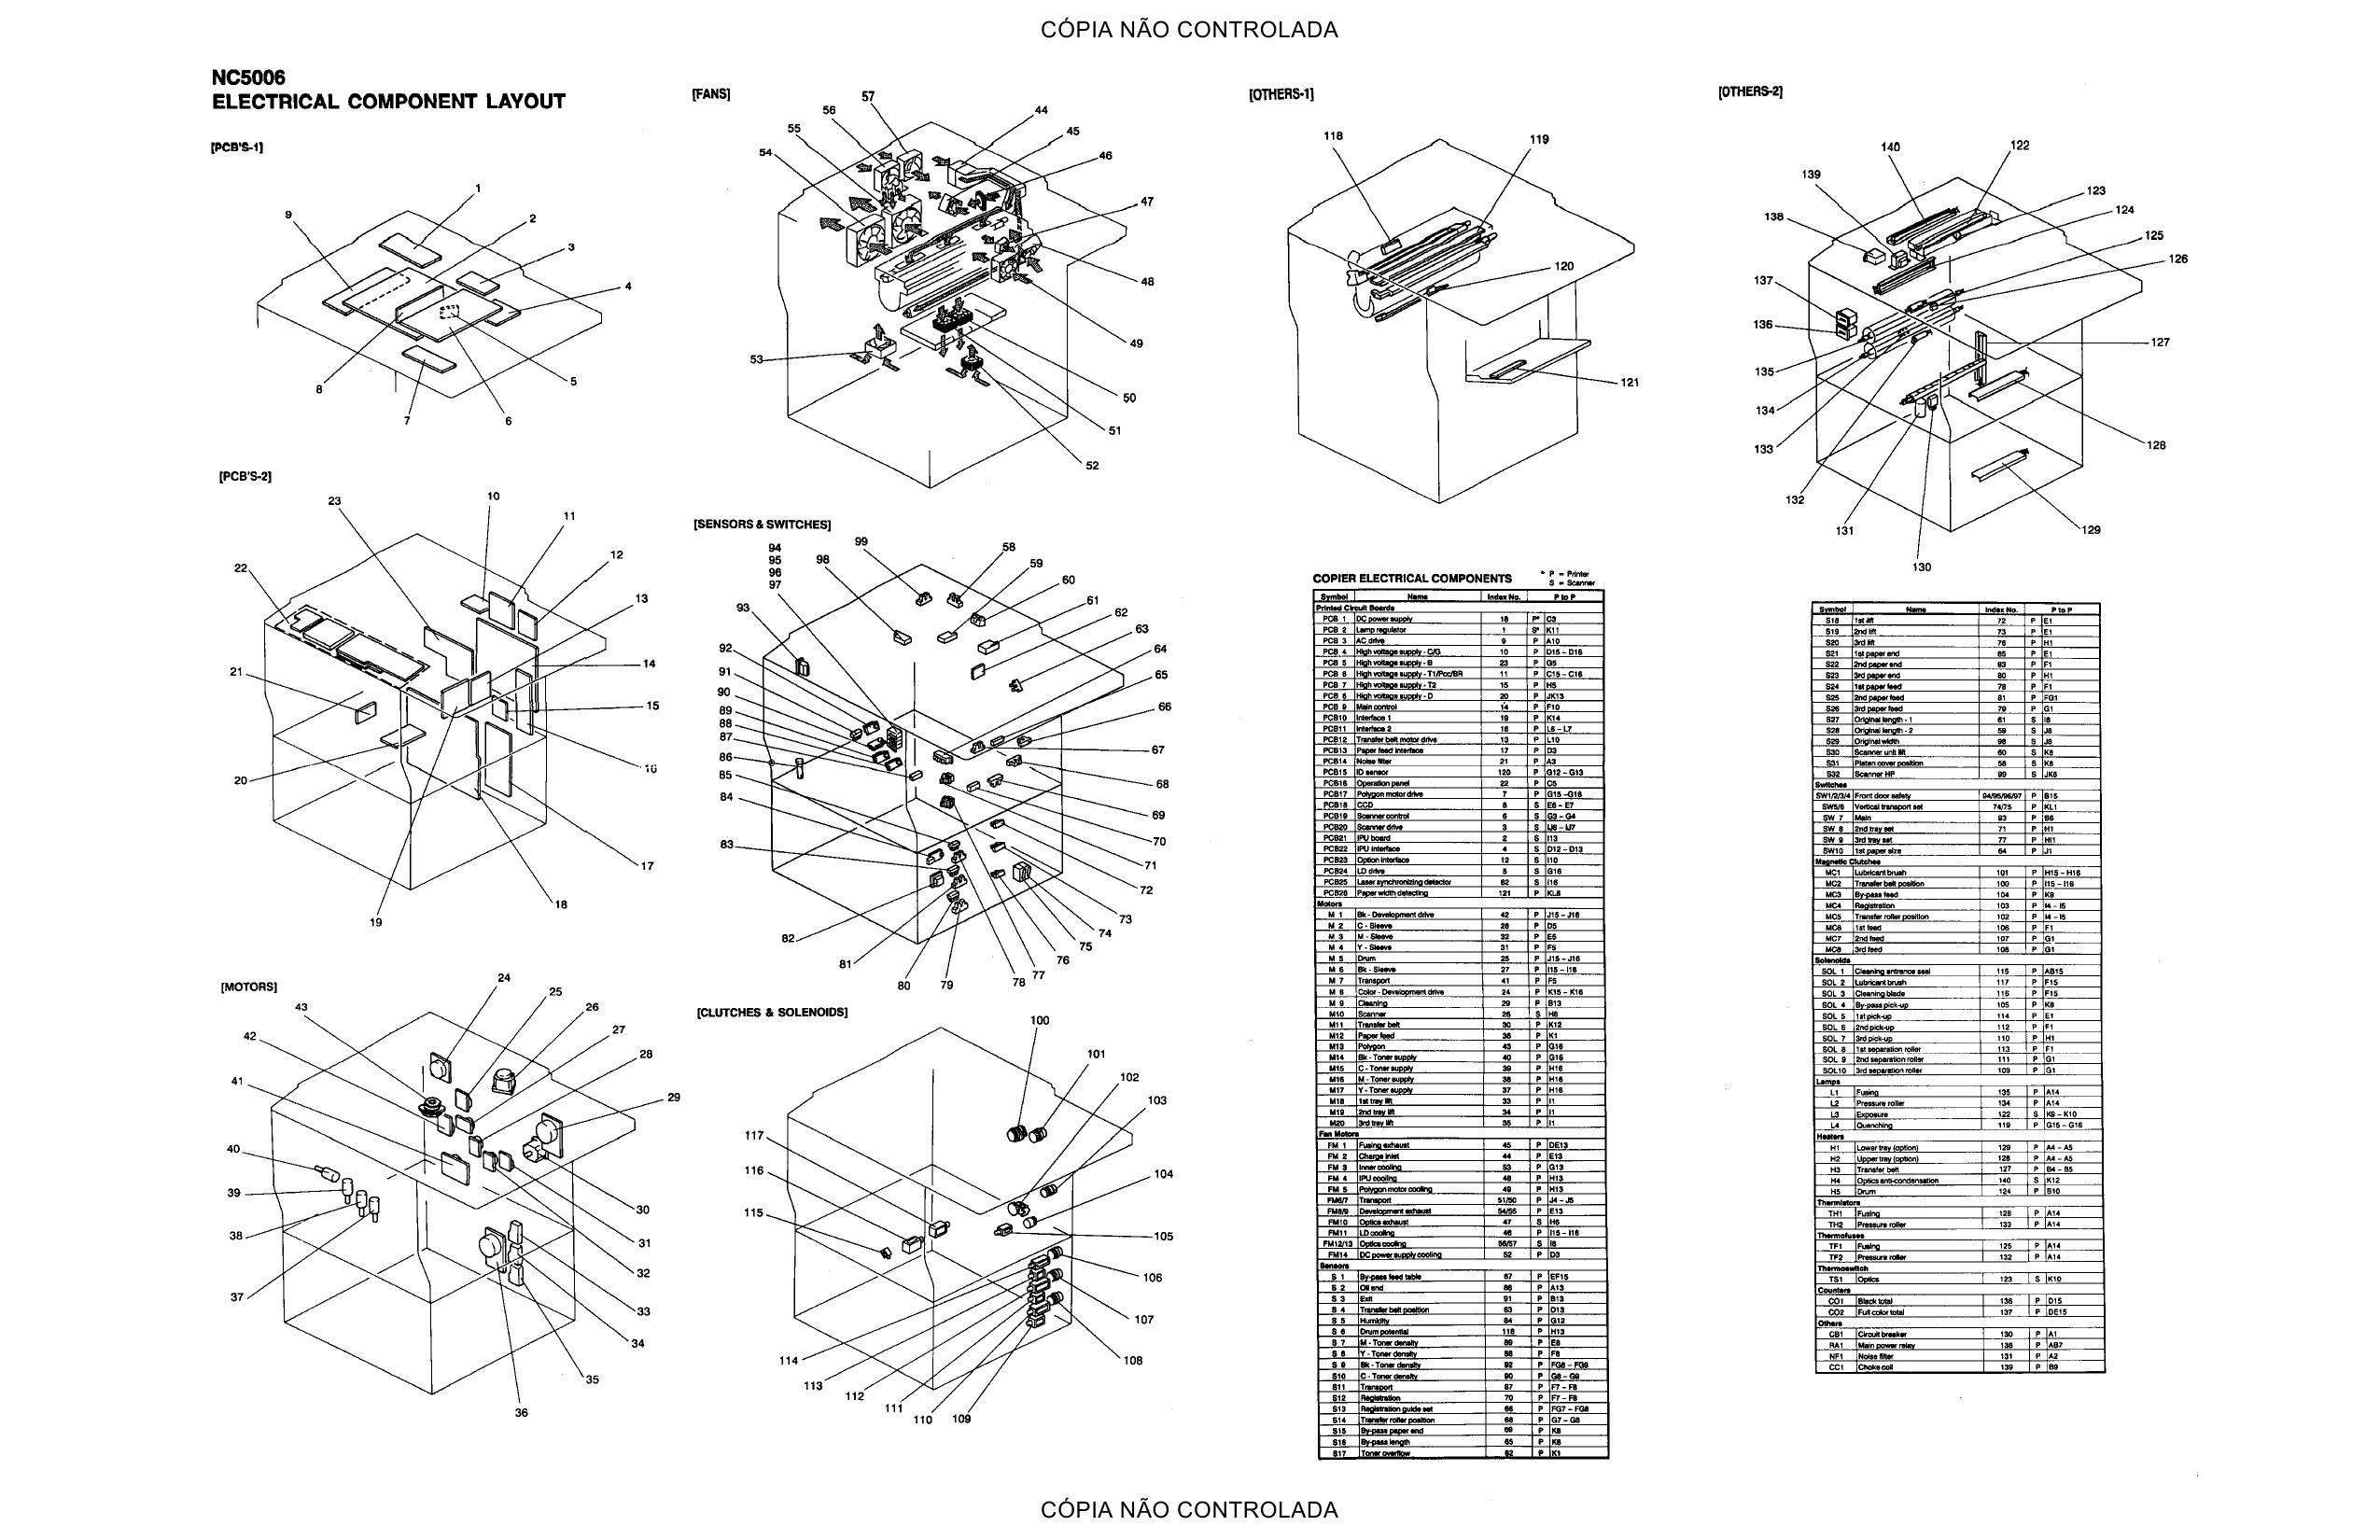 RICOH Aficio NC5006 A109 Circuit Diagram-3